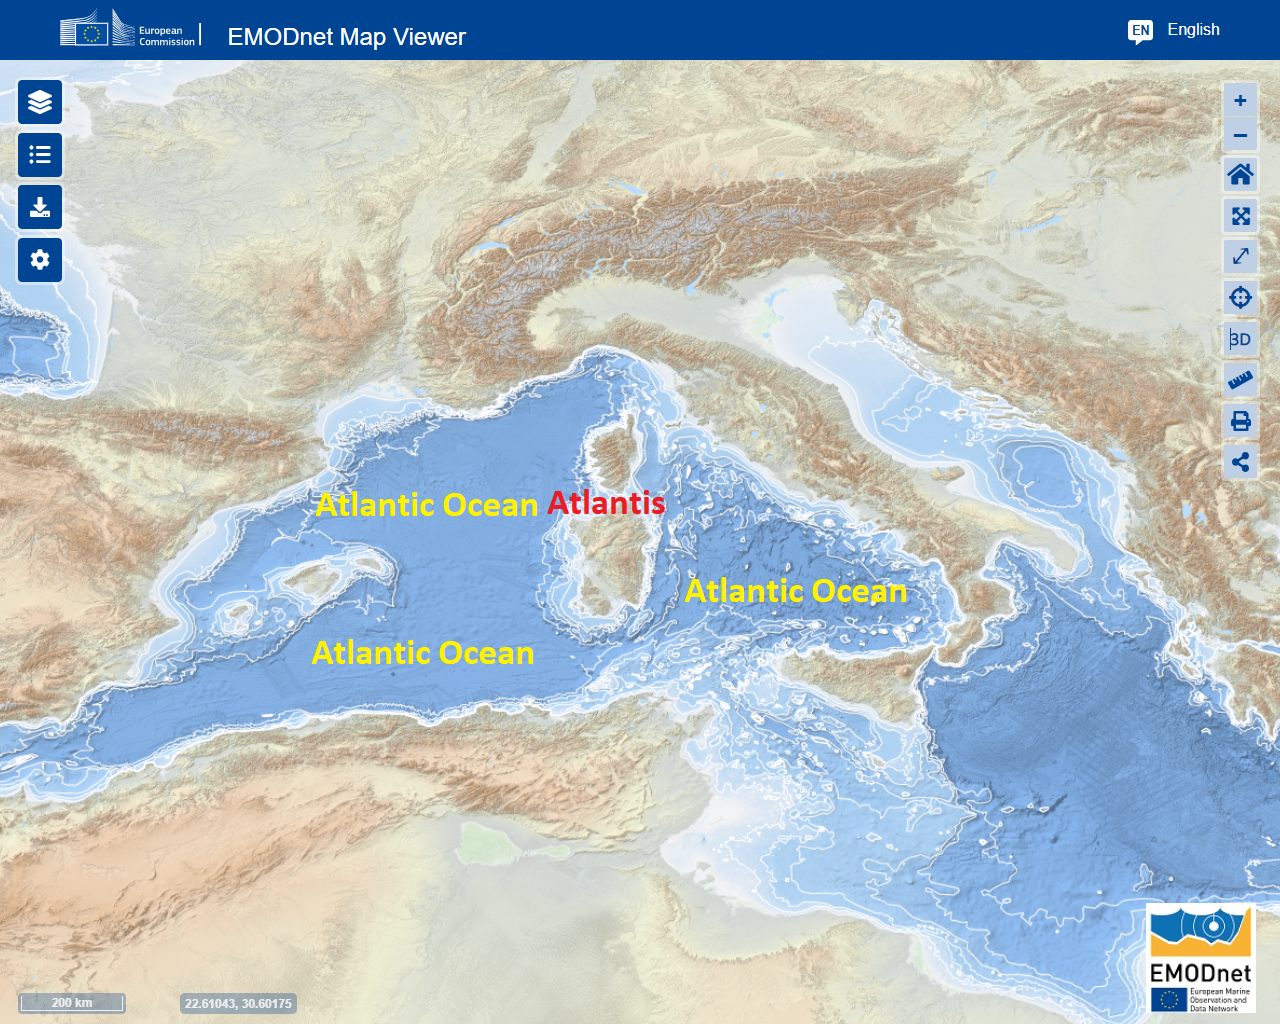 Атлантида в мезолитическом Атлантическом океане, сегодня называемом Средиземным морем.